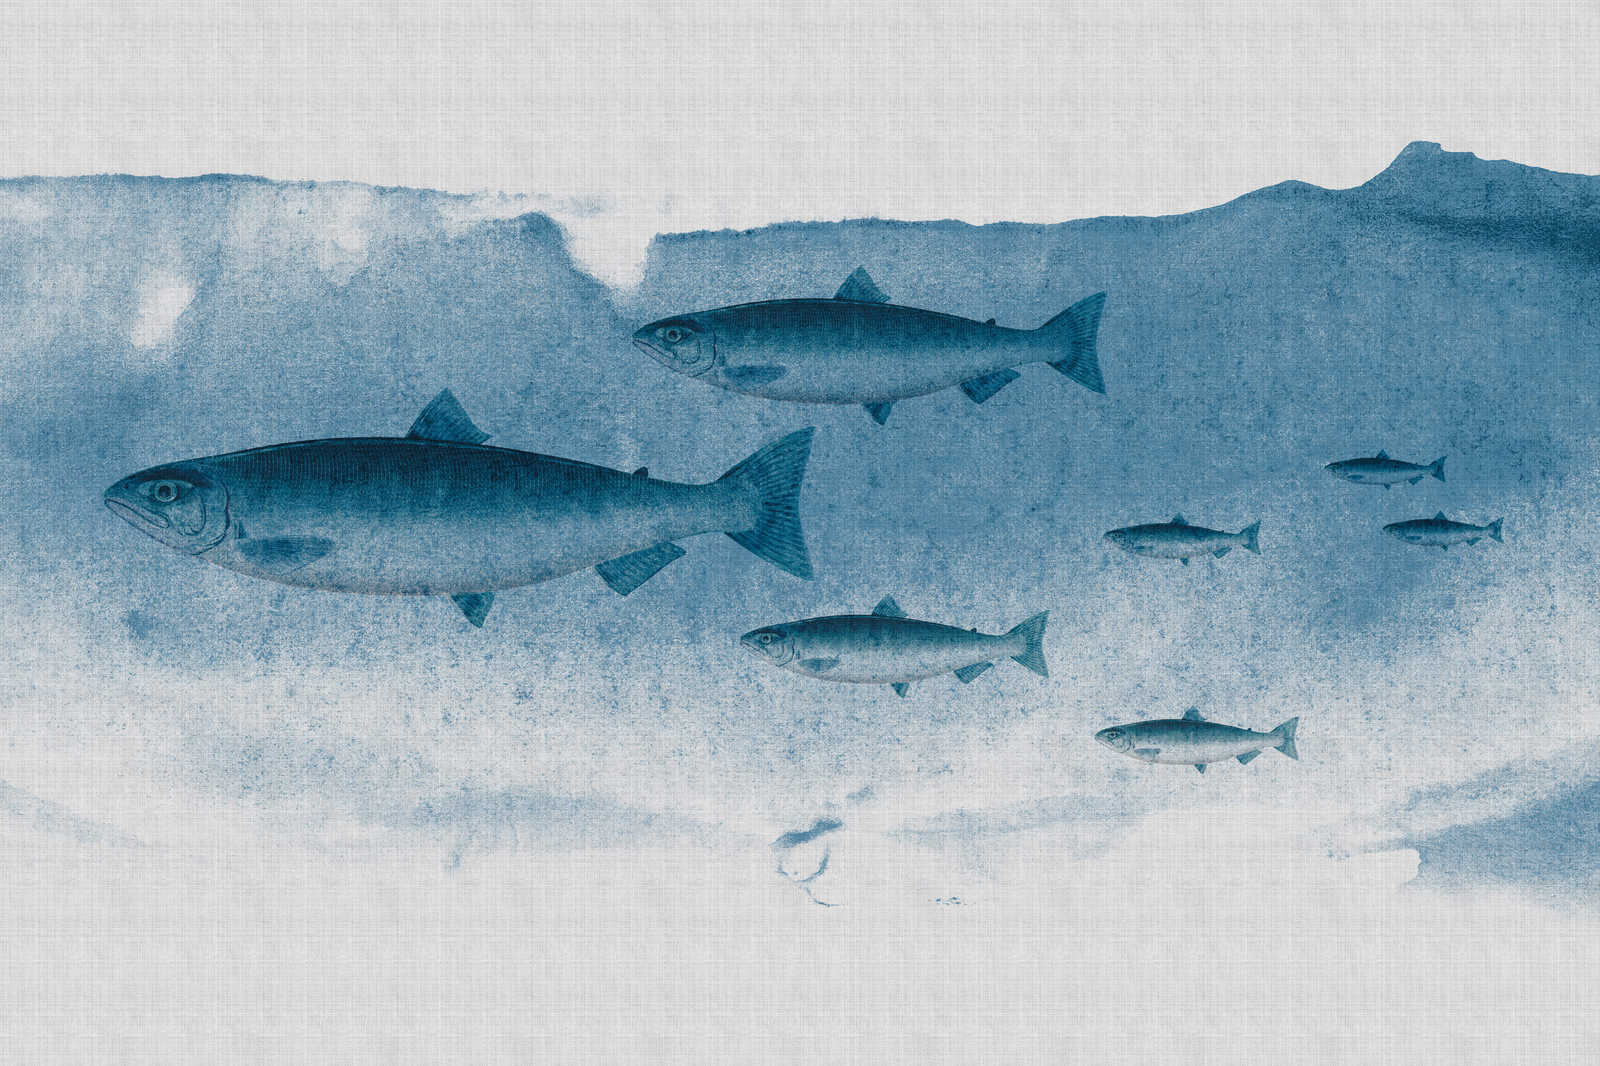             Into the blue 1 - Fisch Aquarell in Blau als Leinwandbild in naturleinen Struktur – 0,90 m x 0,60 m
        